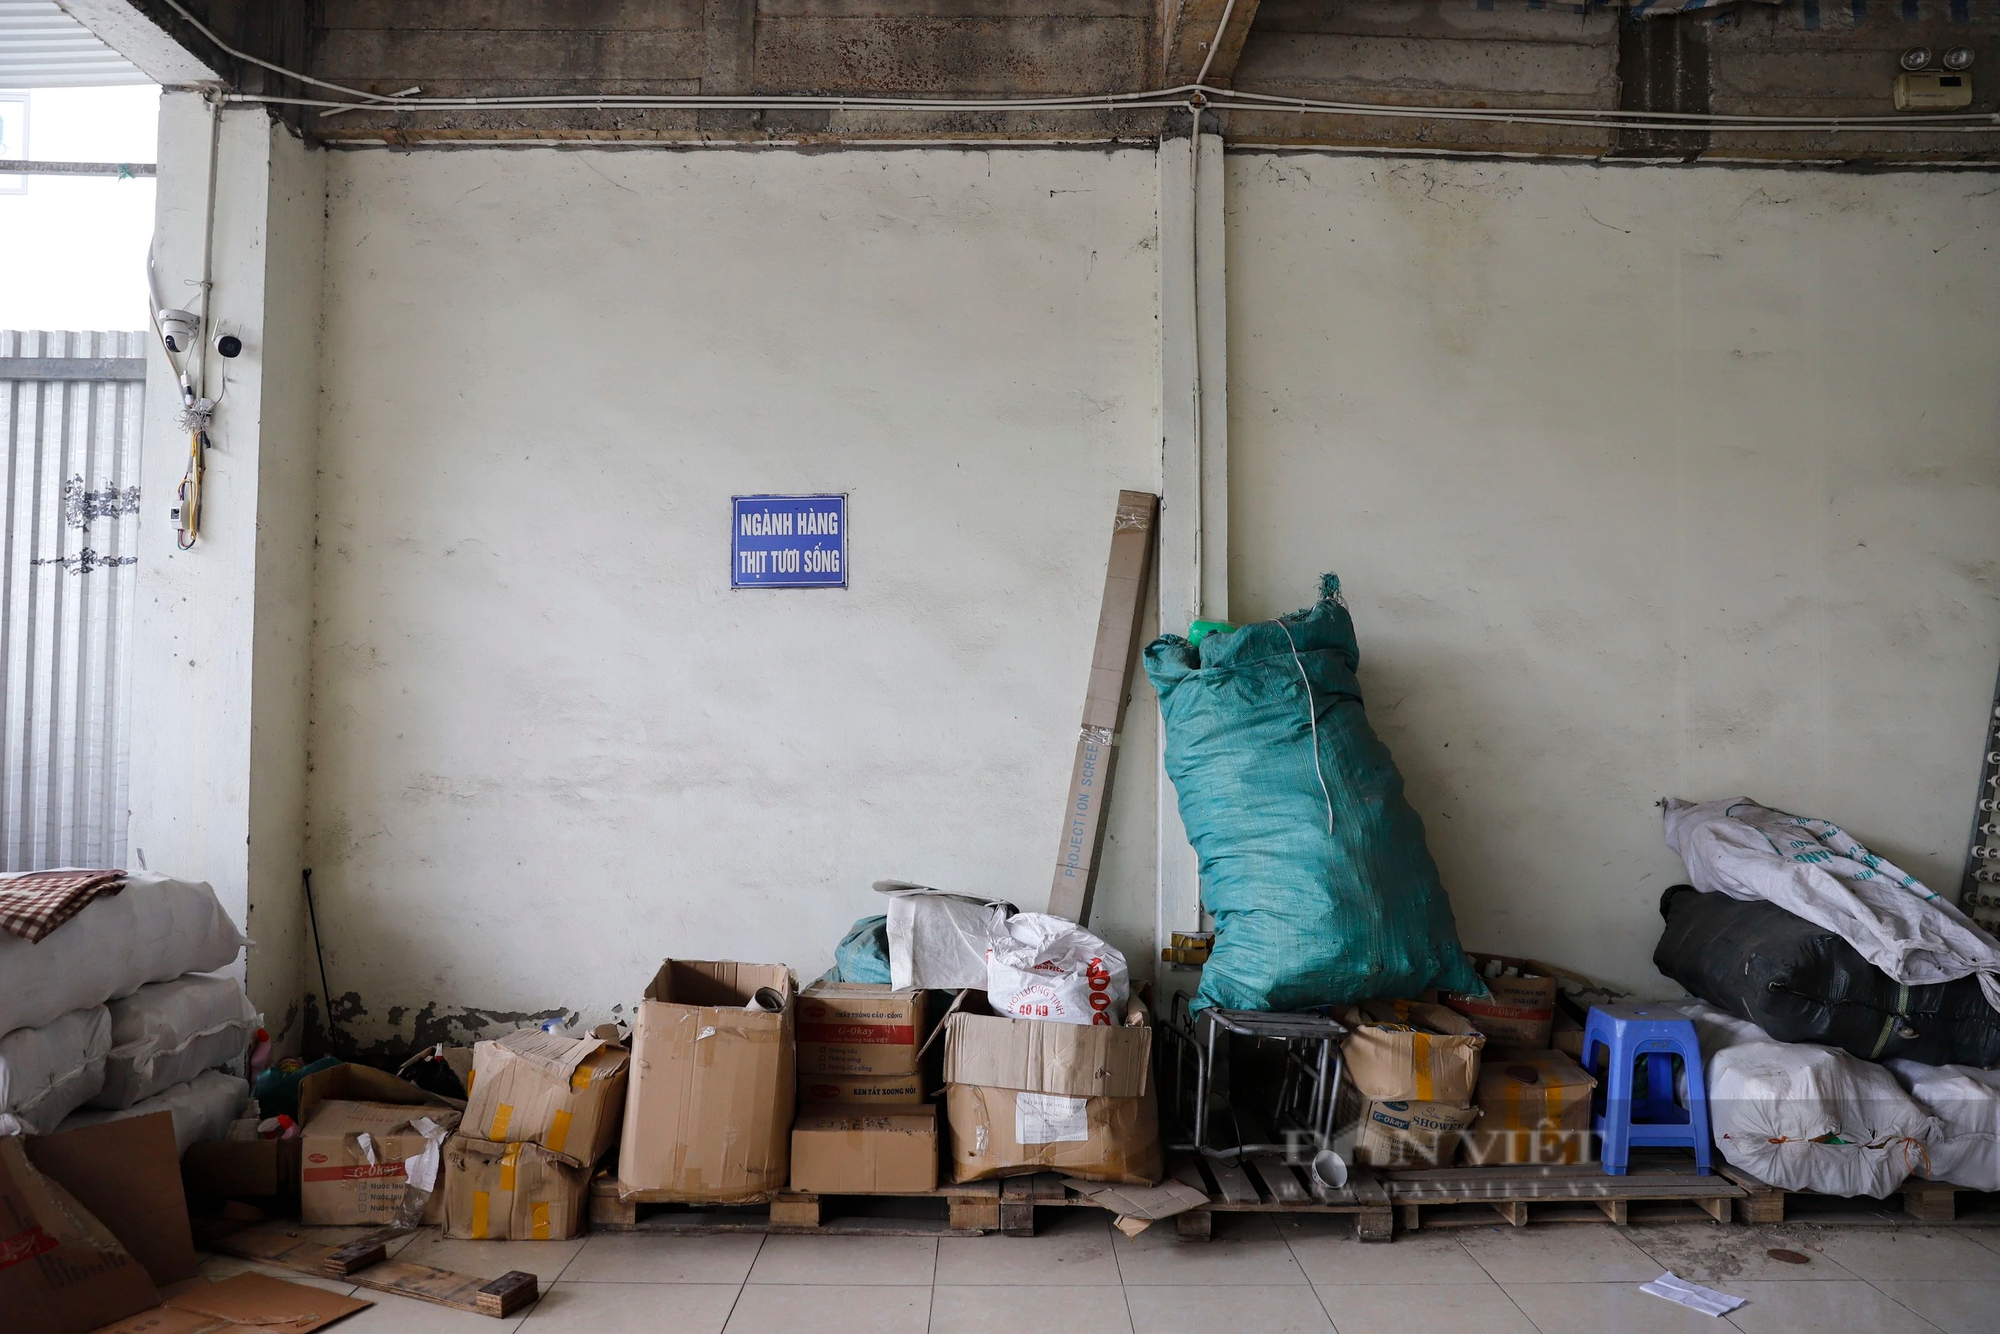 Chợ bỏ hoang ở Hà Nội: BQL viết thư ngỏ mời tiểu thương, kèm ưu đãi nhưng chợ vẫn "vắng như chùa Bà Đanh"- Ảnh 7.